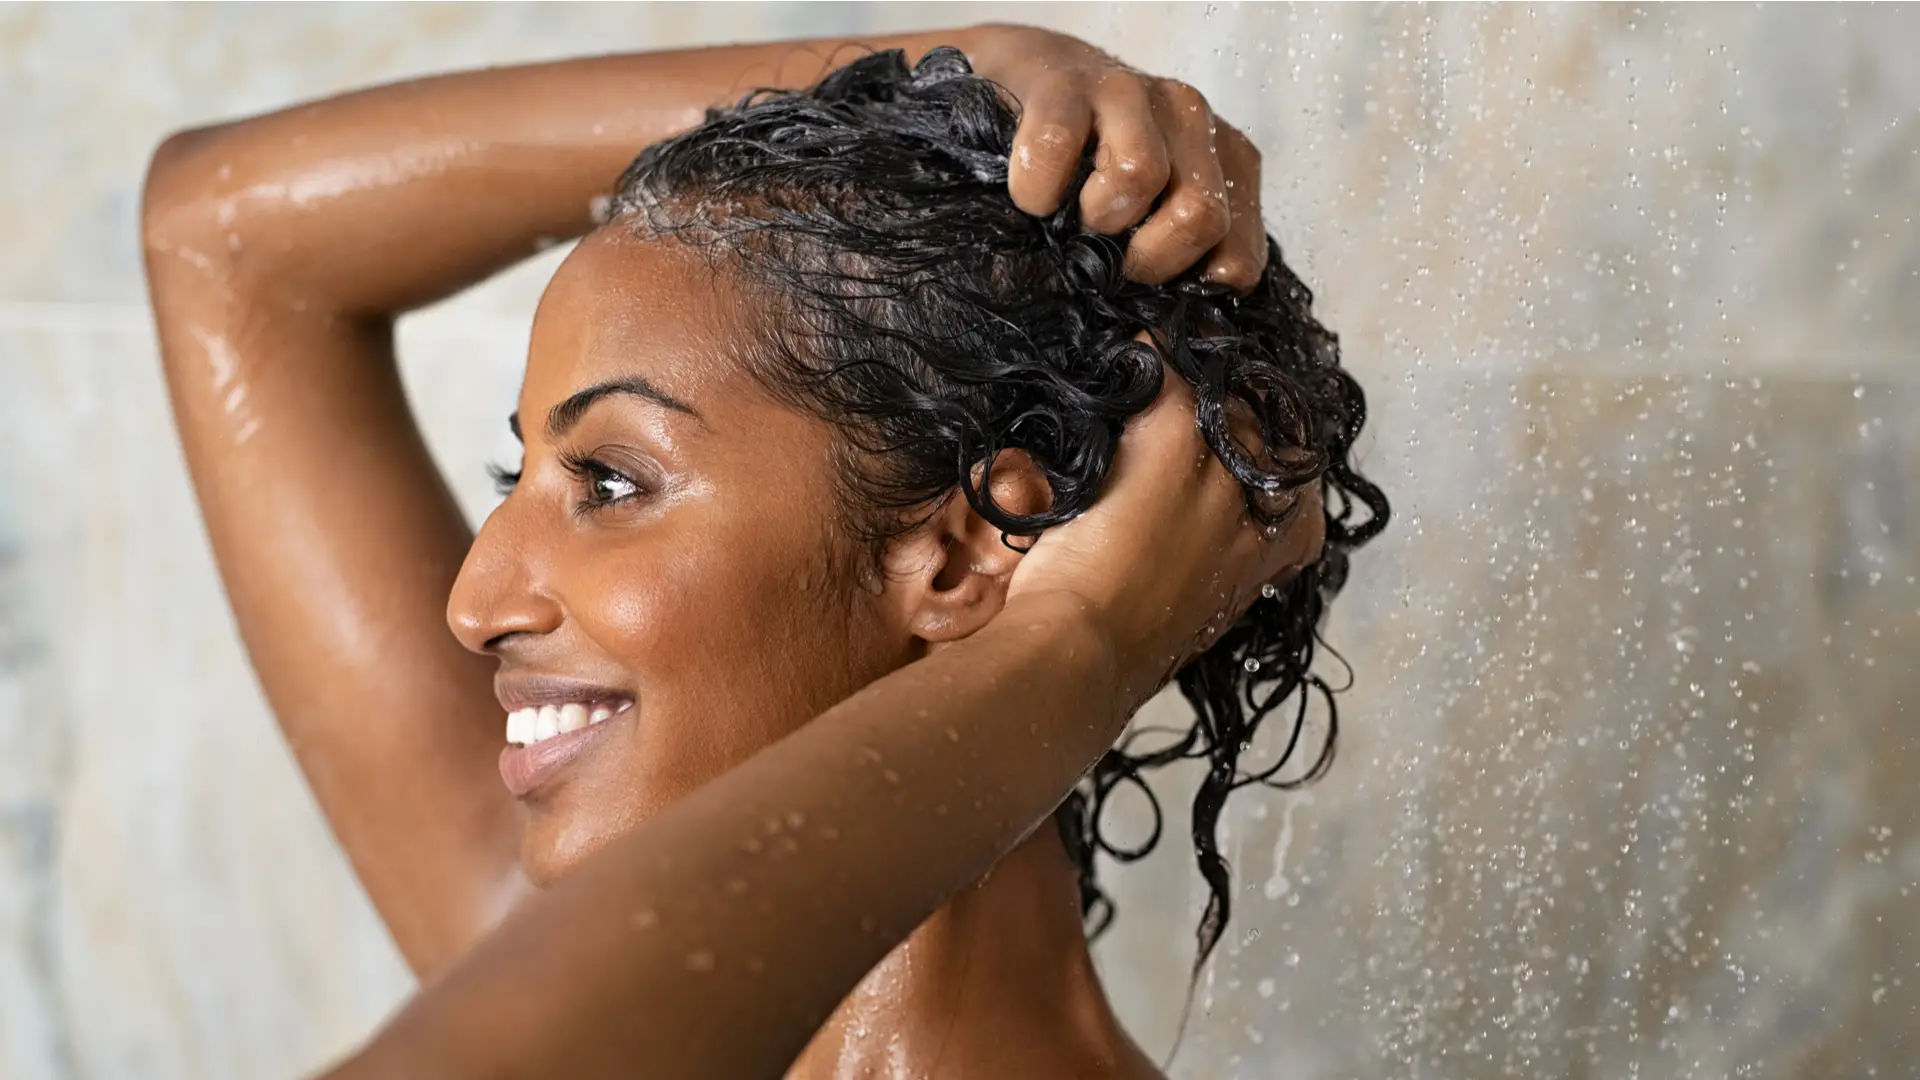 Mulher negra usando shampoo durante banho